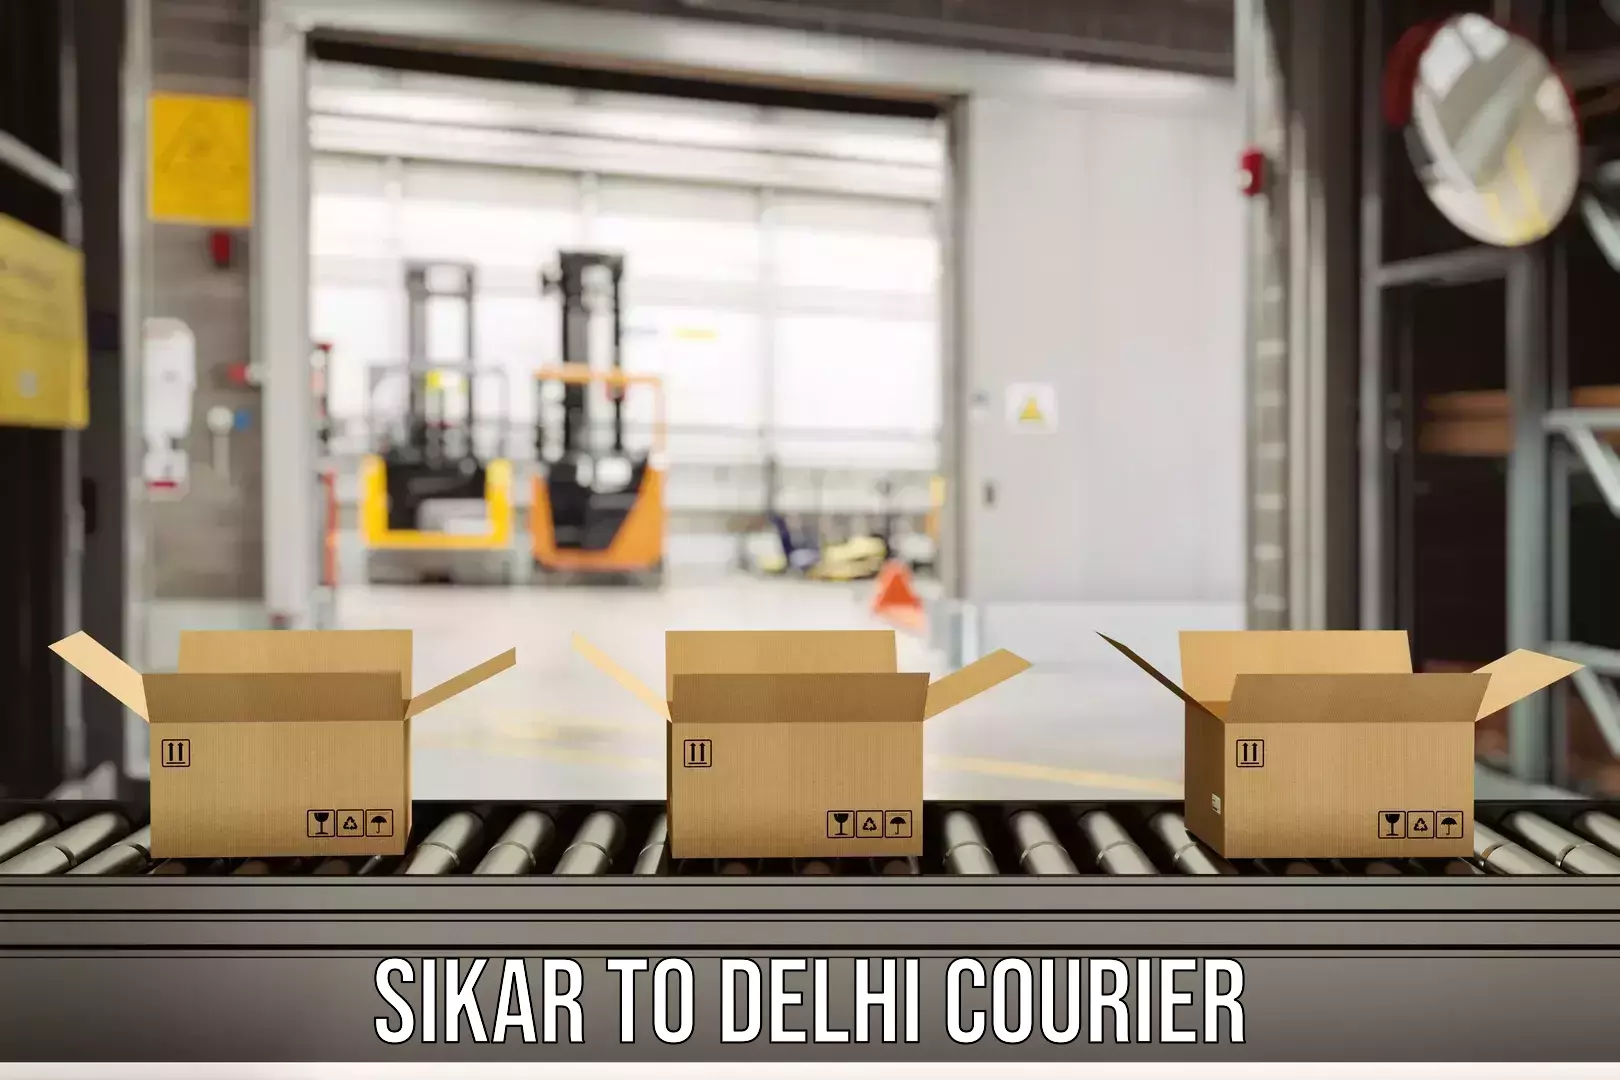 Courier service partnerships Sikar to Jamia Hamdard New Delhi